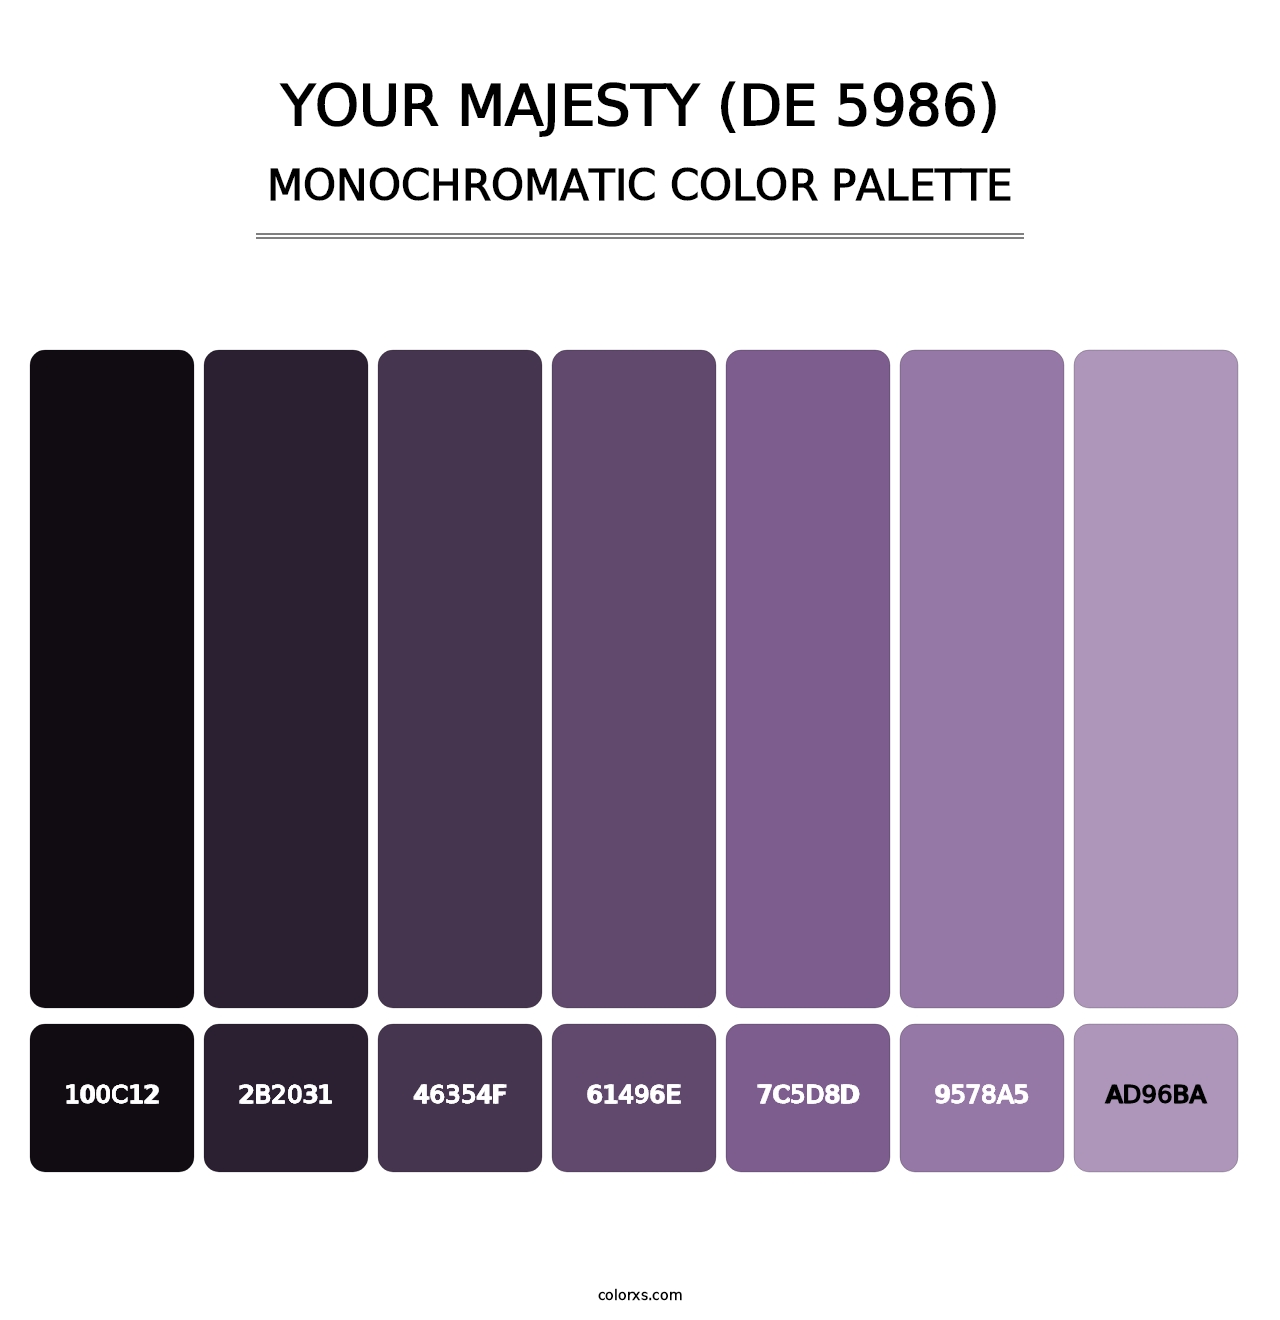 Your Majesty (DE 5986) - Monochromatic Color Palette